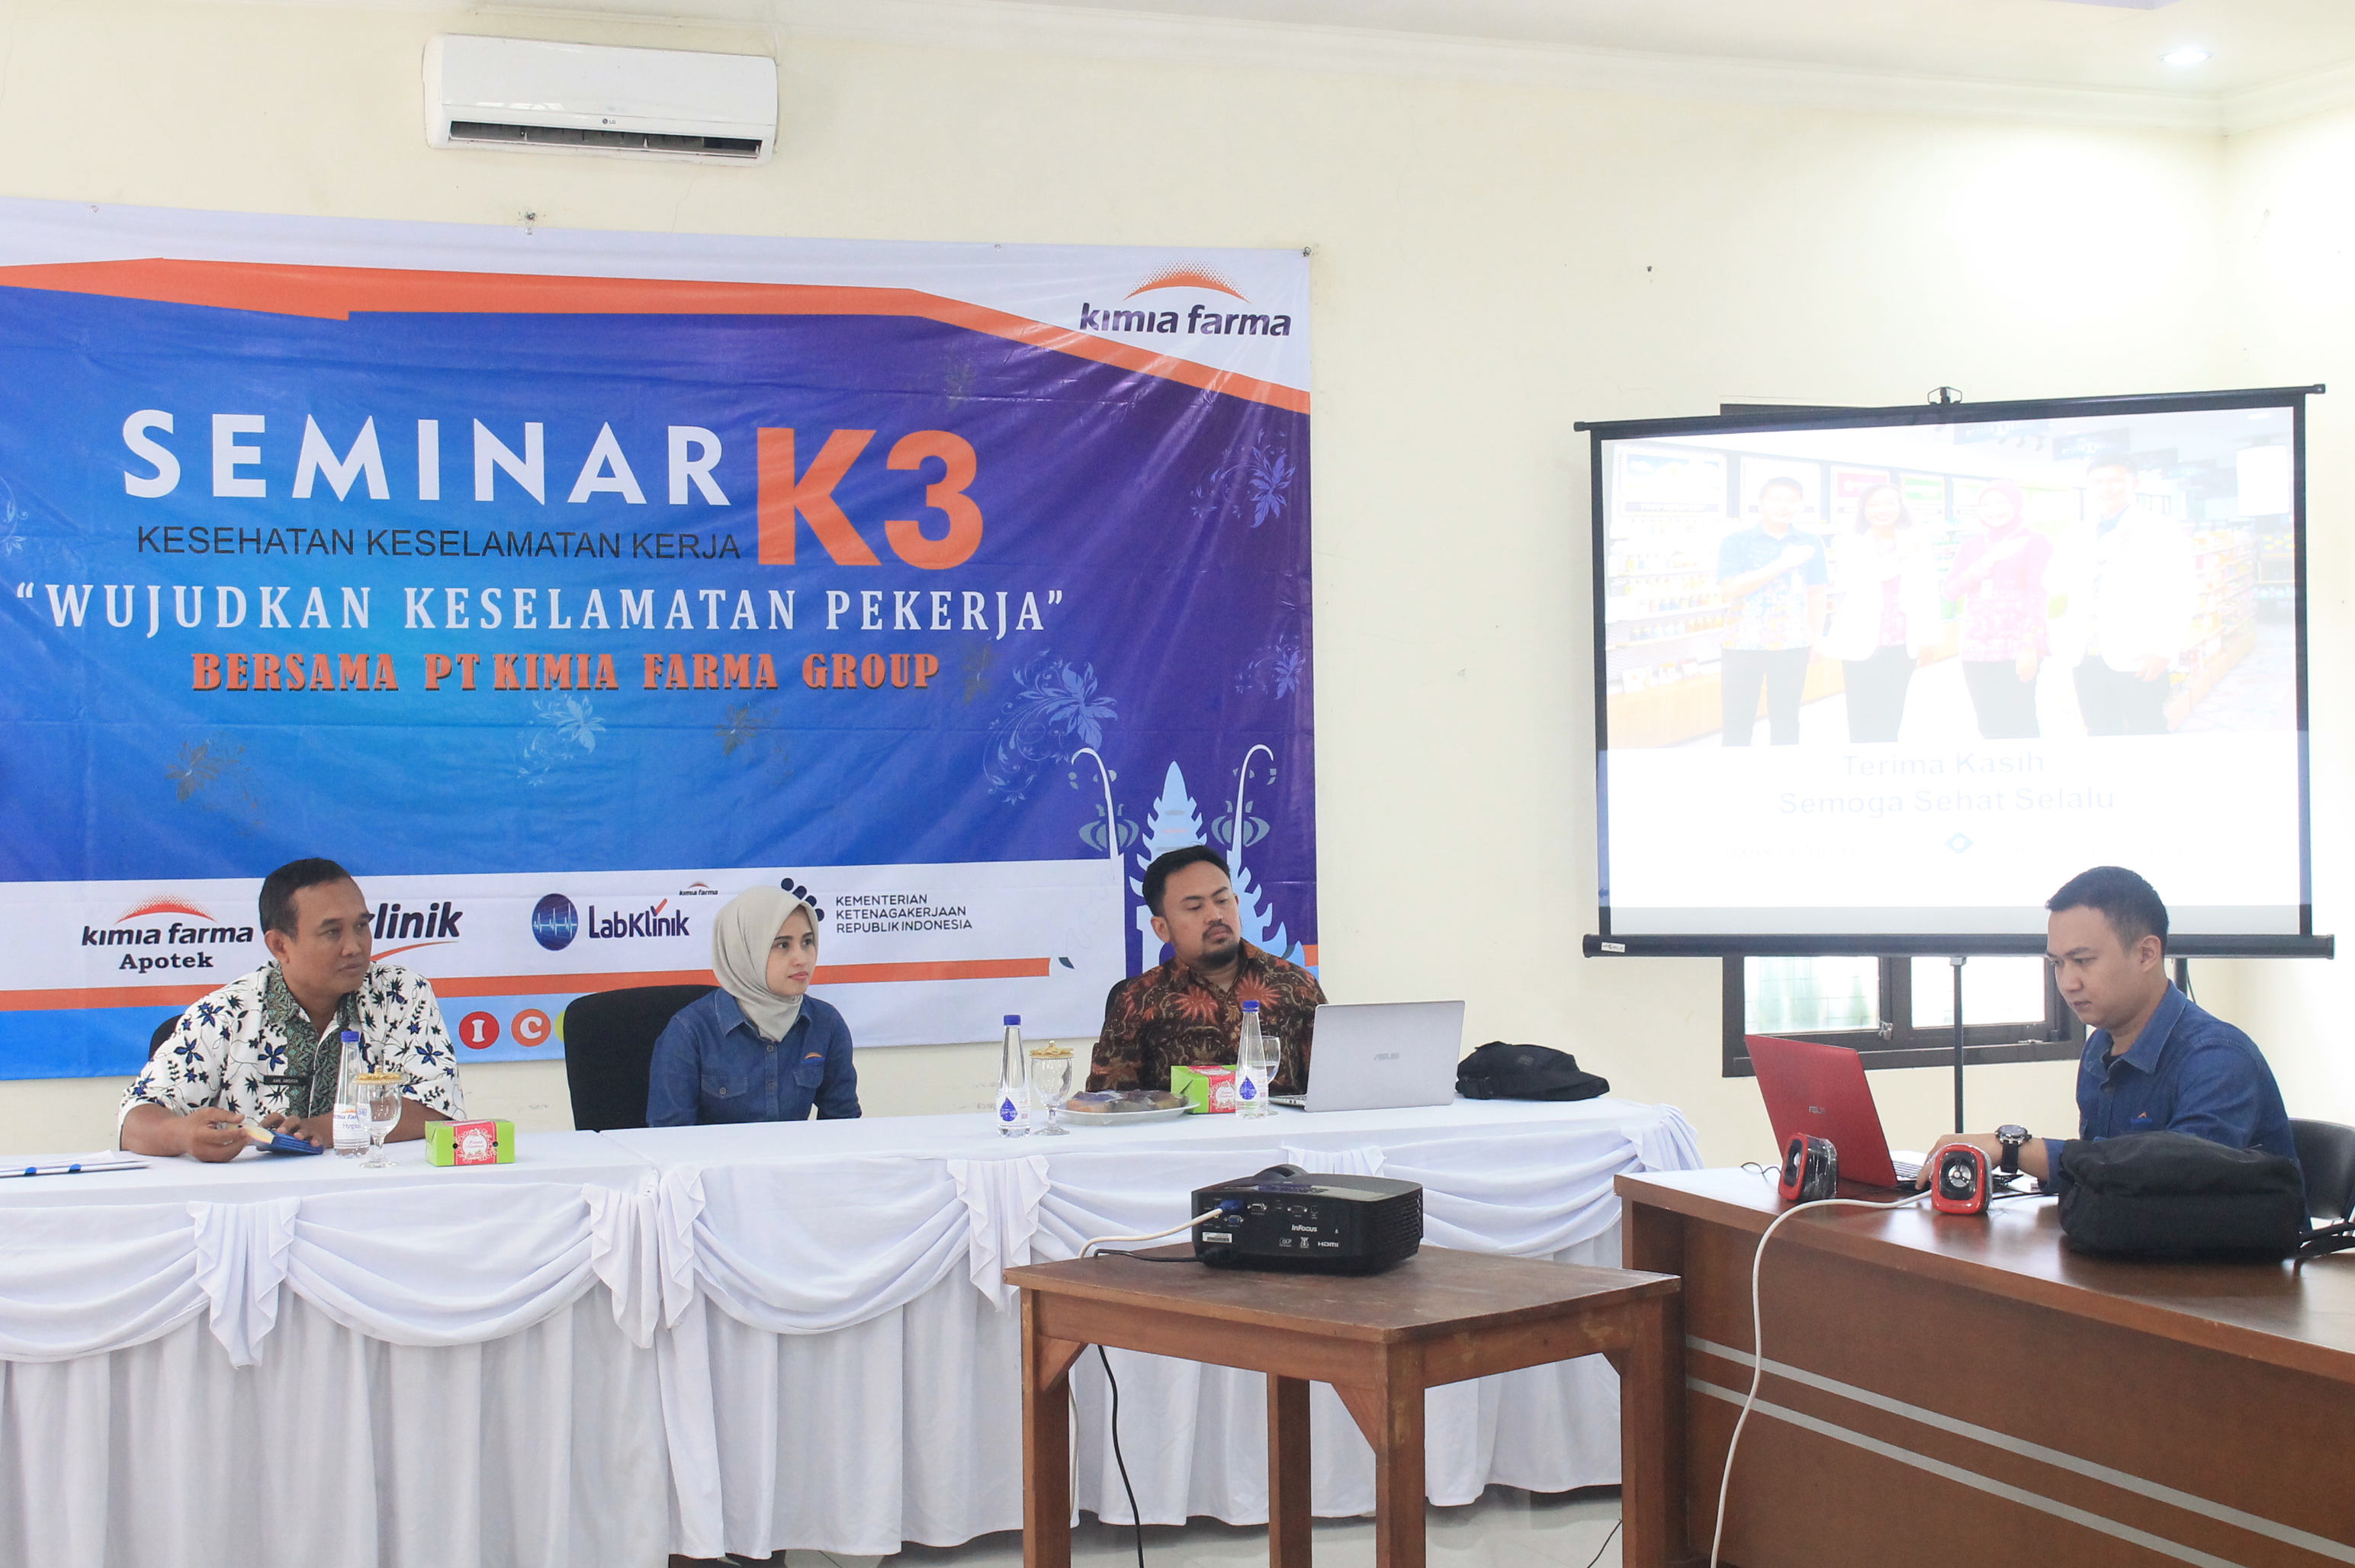 Kimia Farma Bandung-Cirebon Gelar Seminar K3